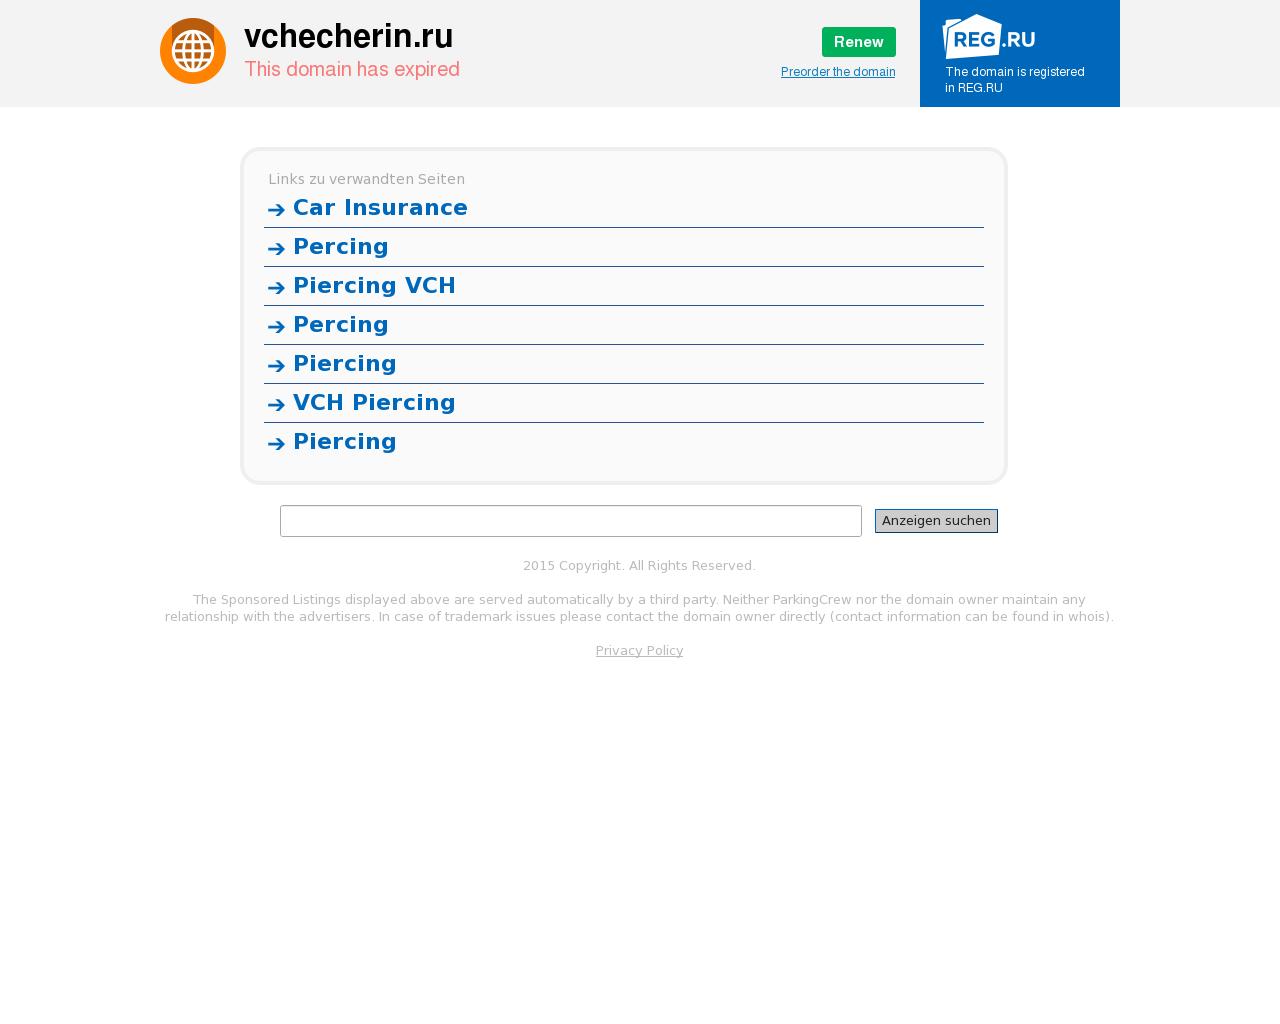 Изображение сайта vchecherin.ru в разрешении 1280x1024